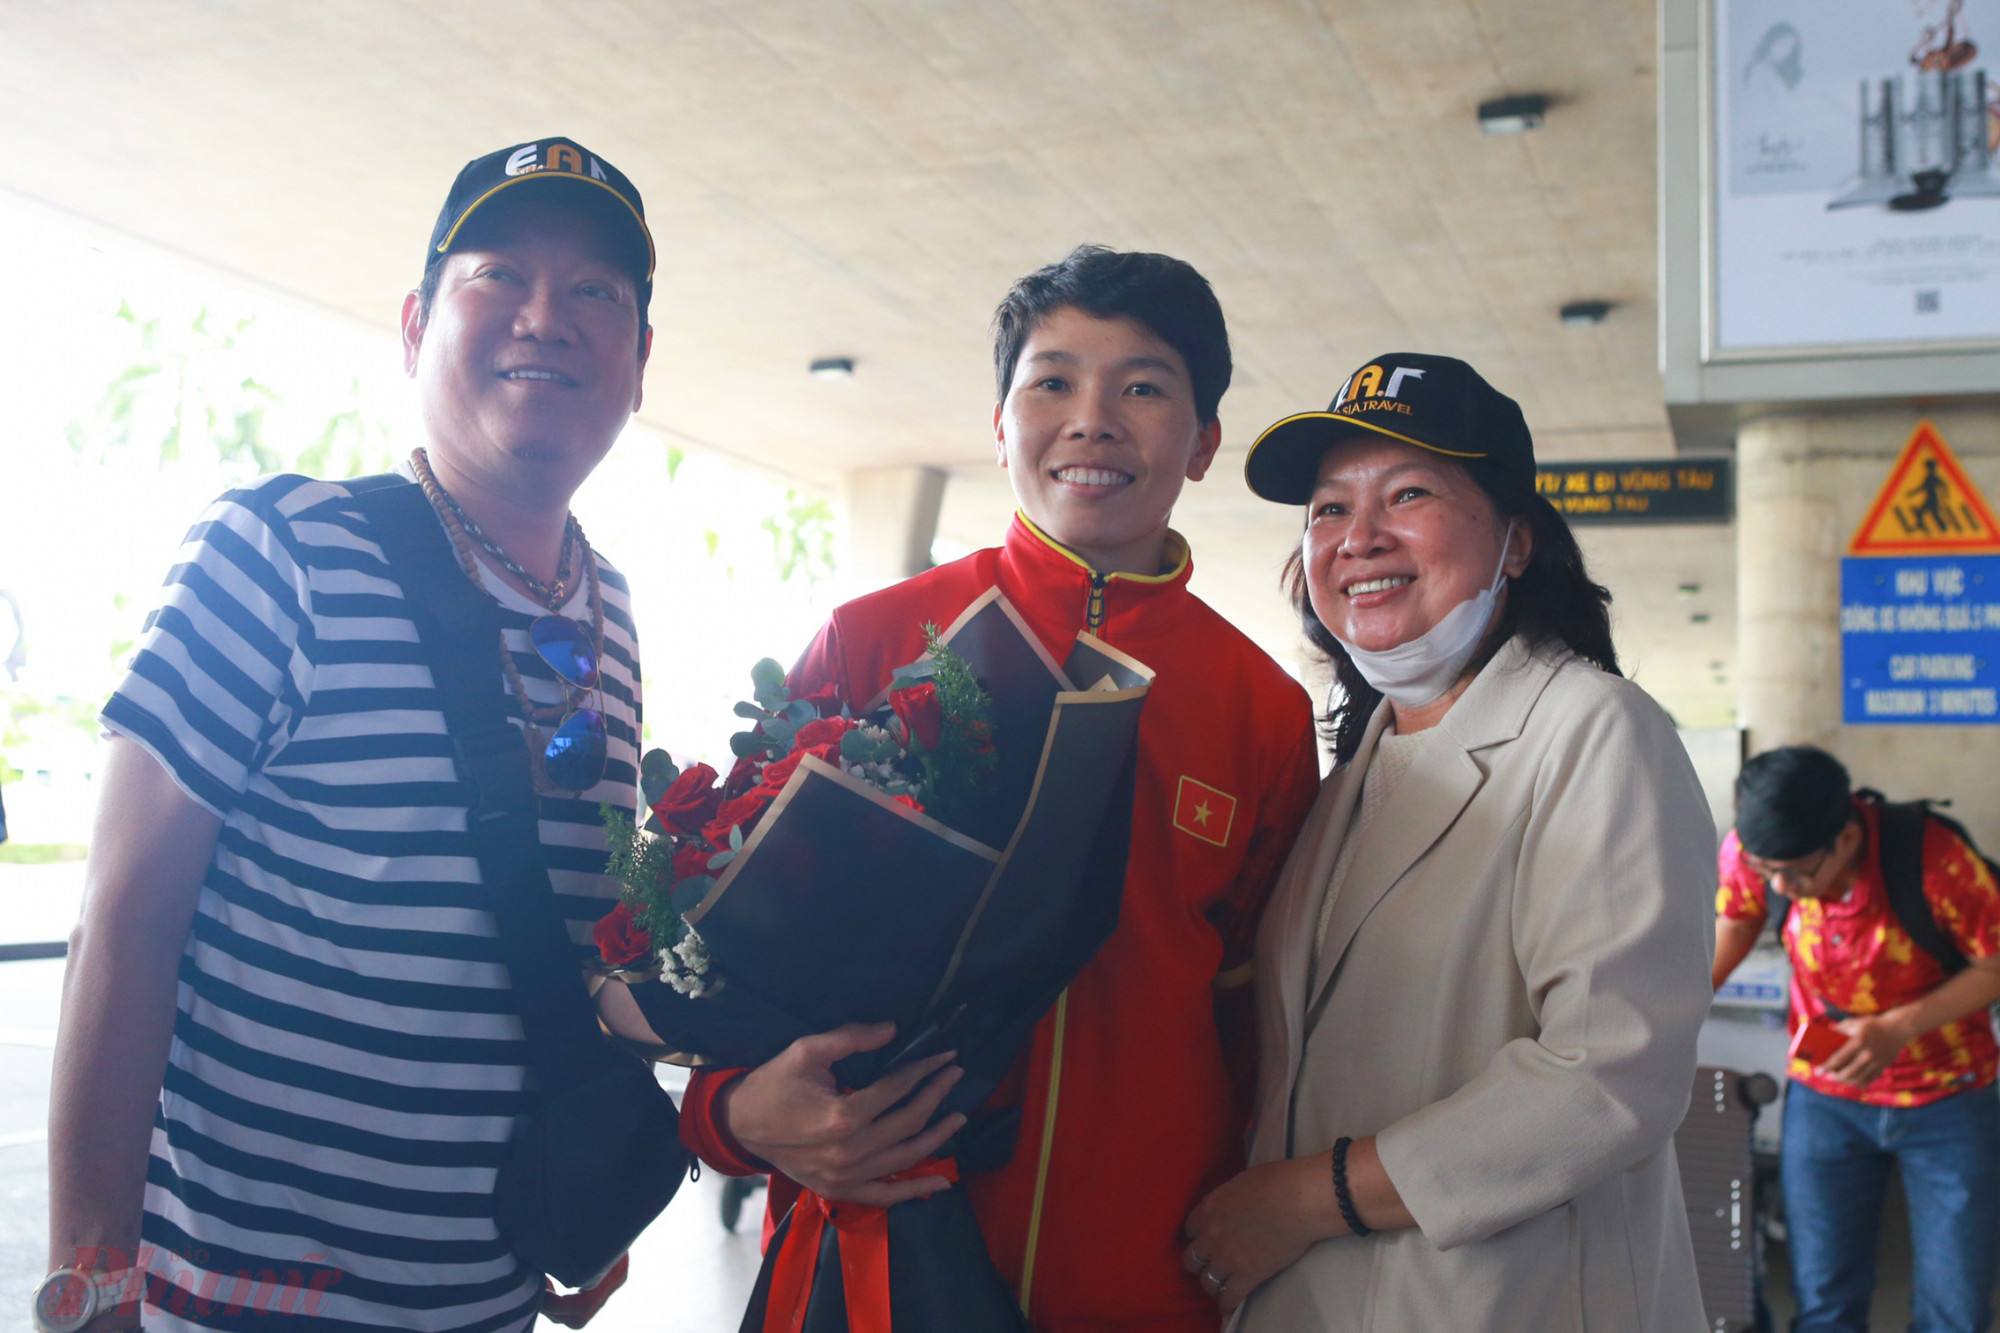 Nhiều người thân, người hâm mộ vây quanh tặng hoa, chụp hình cùng các tuyển thủ. Thủ môn Kim Thanh, một trong những cầu thủ chơi trọn vẹn 3 trận đấu cho đội tuyển chia sẻ: